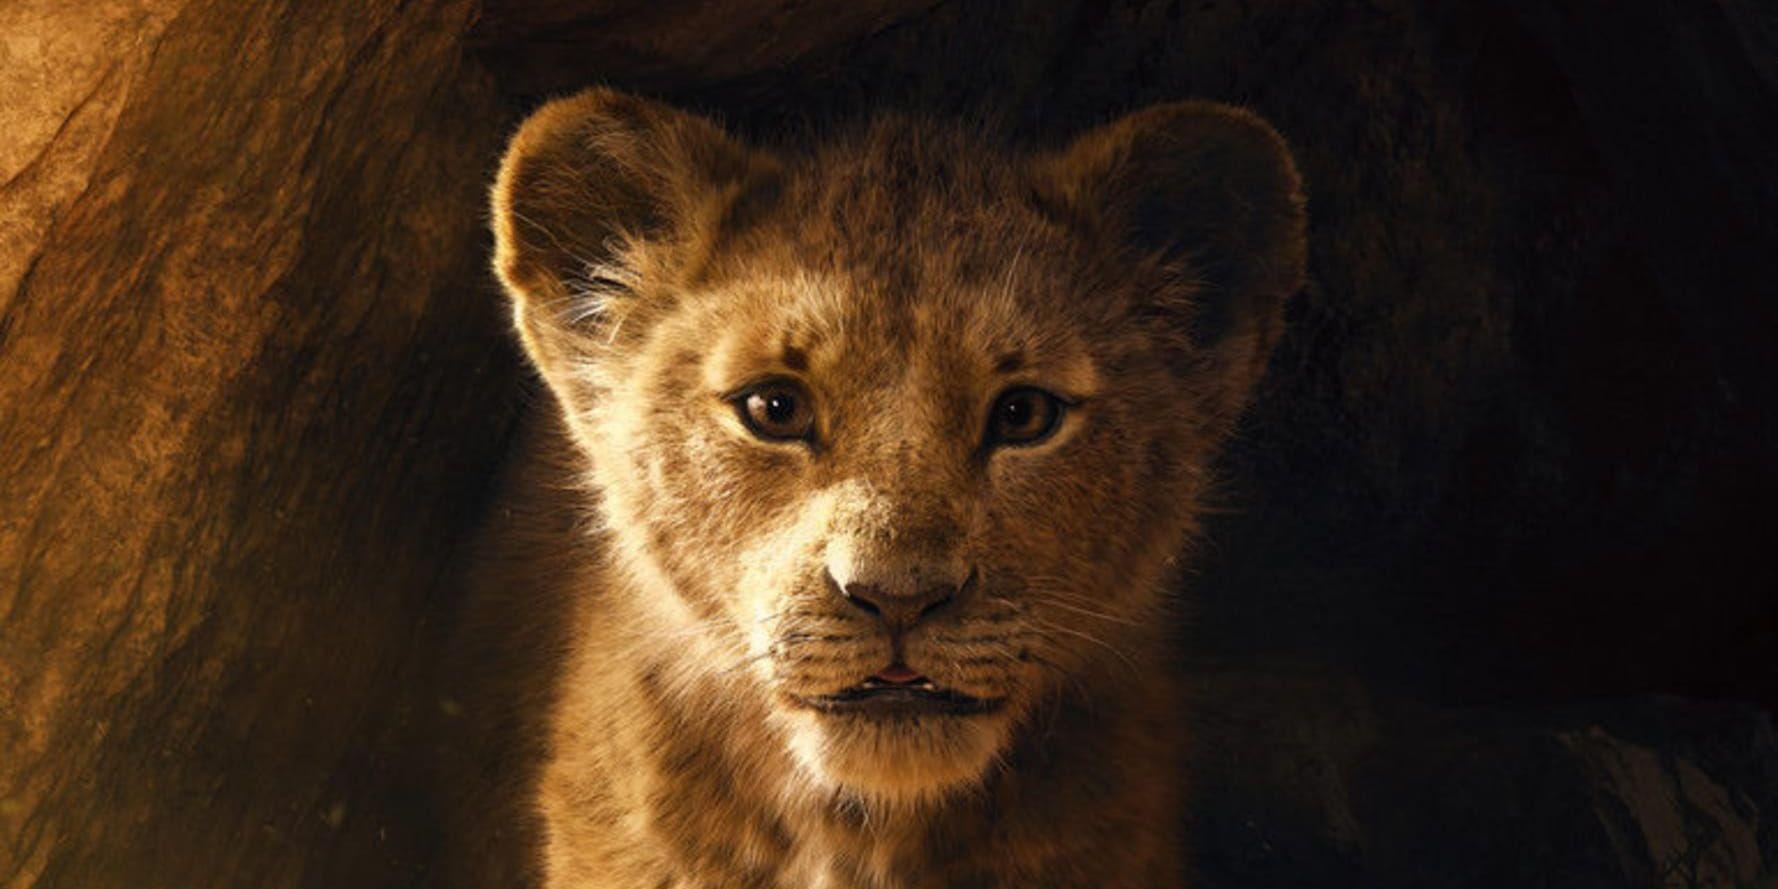 "Lejonkungen" har premiär nästa sommar. Pressbild.